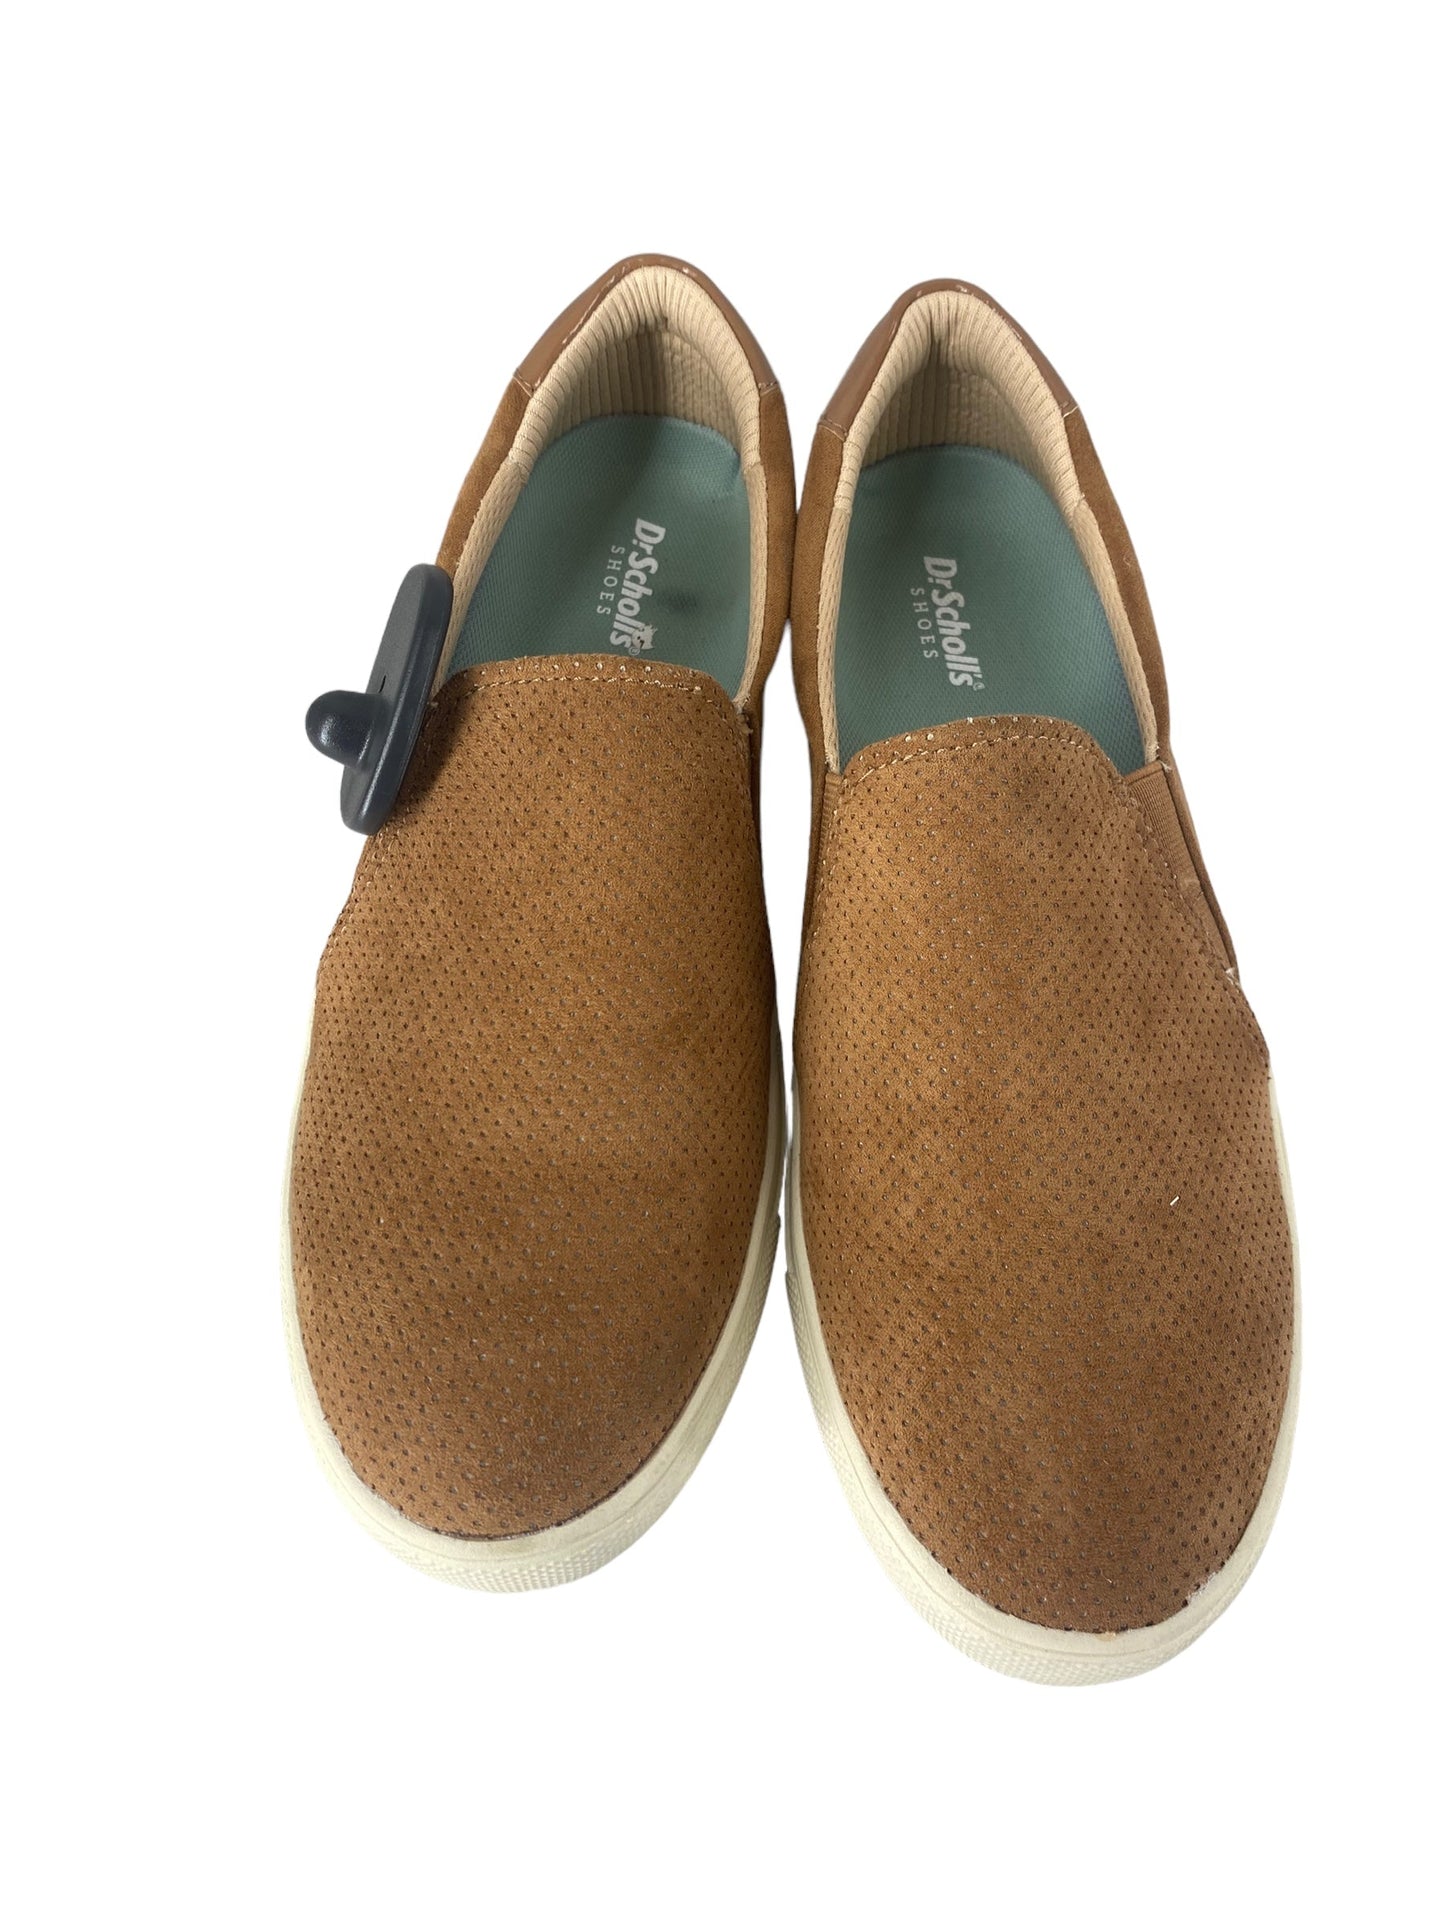 Brown Shoes Flats Dr Scholls, Size 8